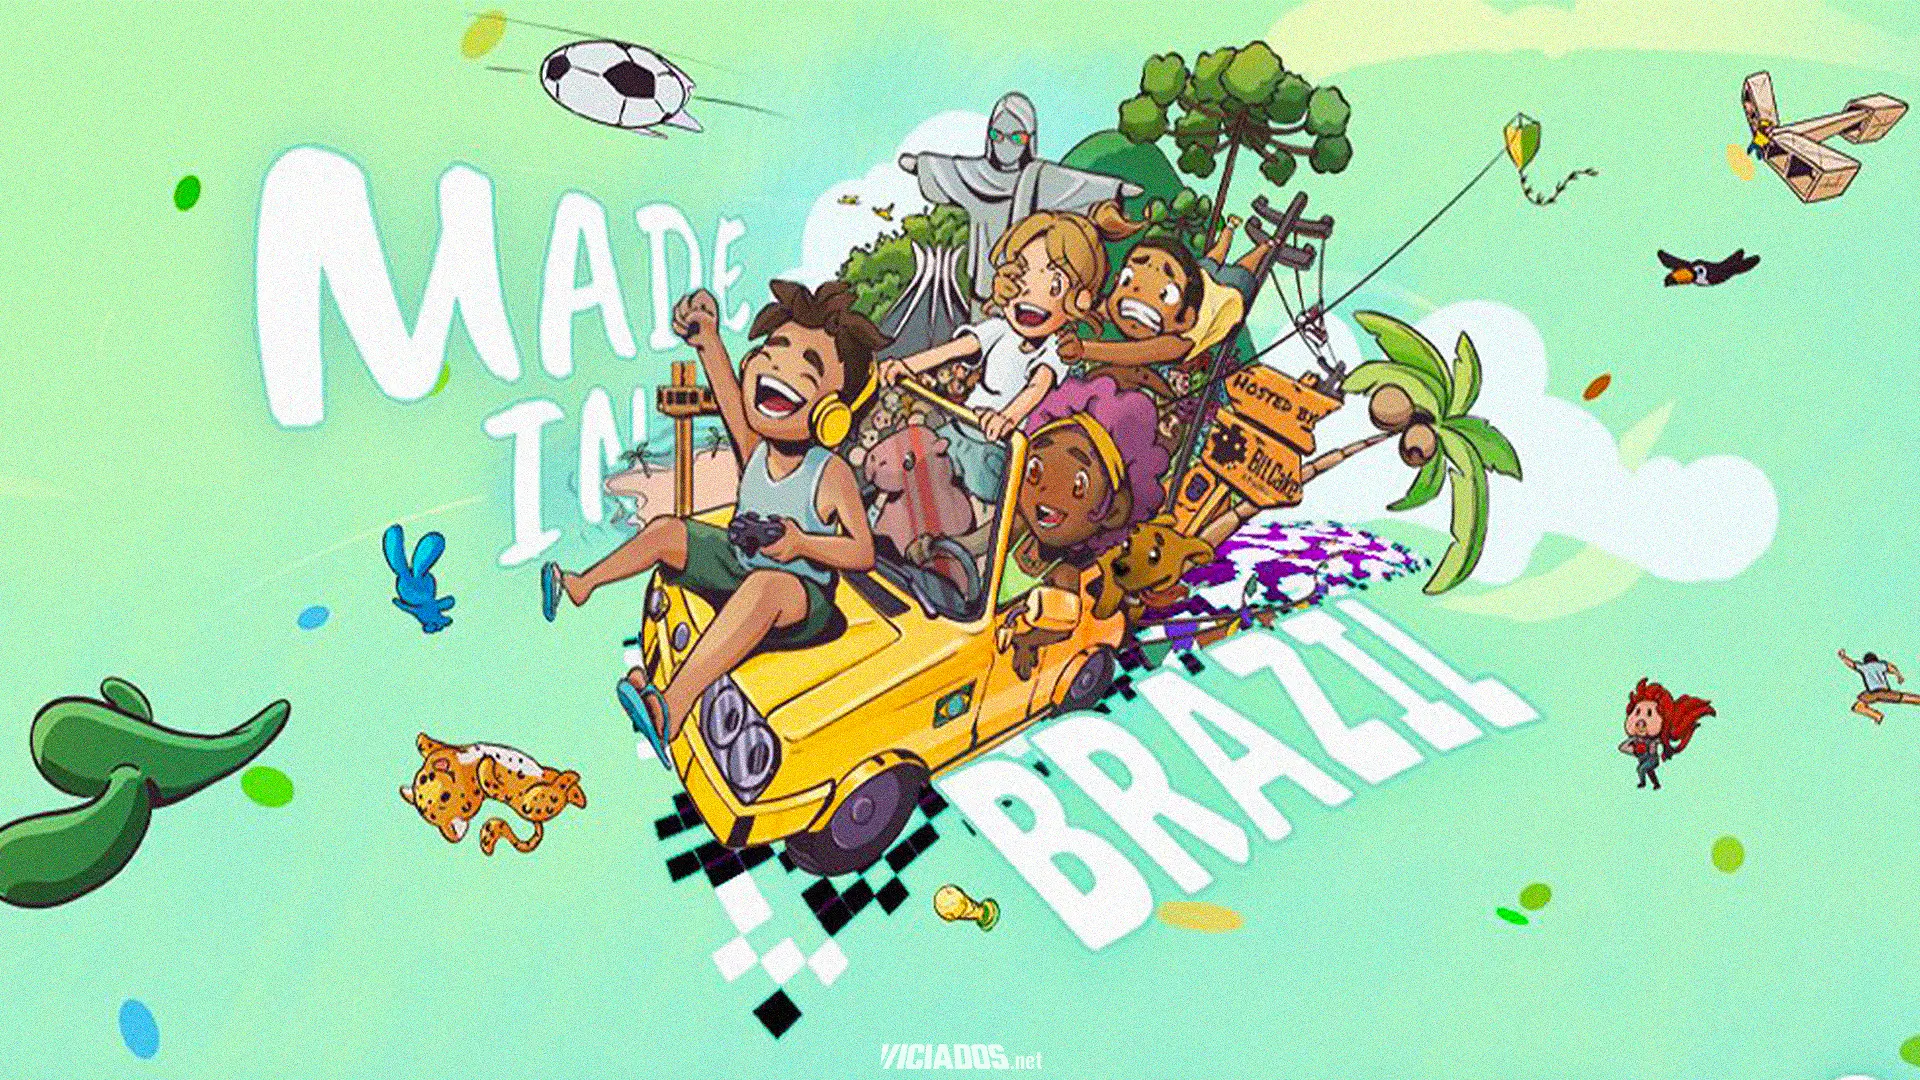 É do Brasil! Steam fará promoção com jogos brasileiros nesta data 2023 Viciados